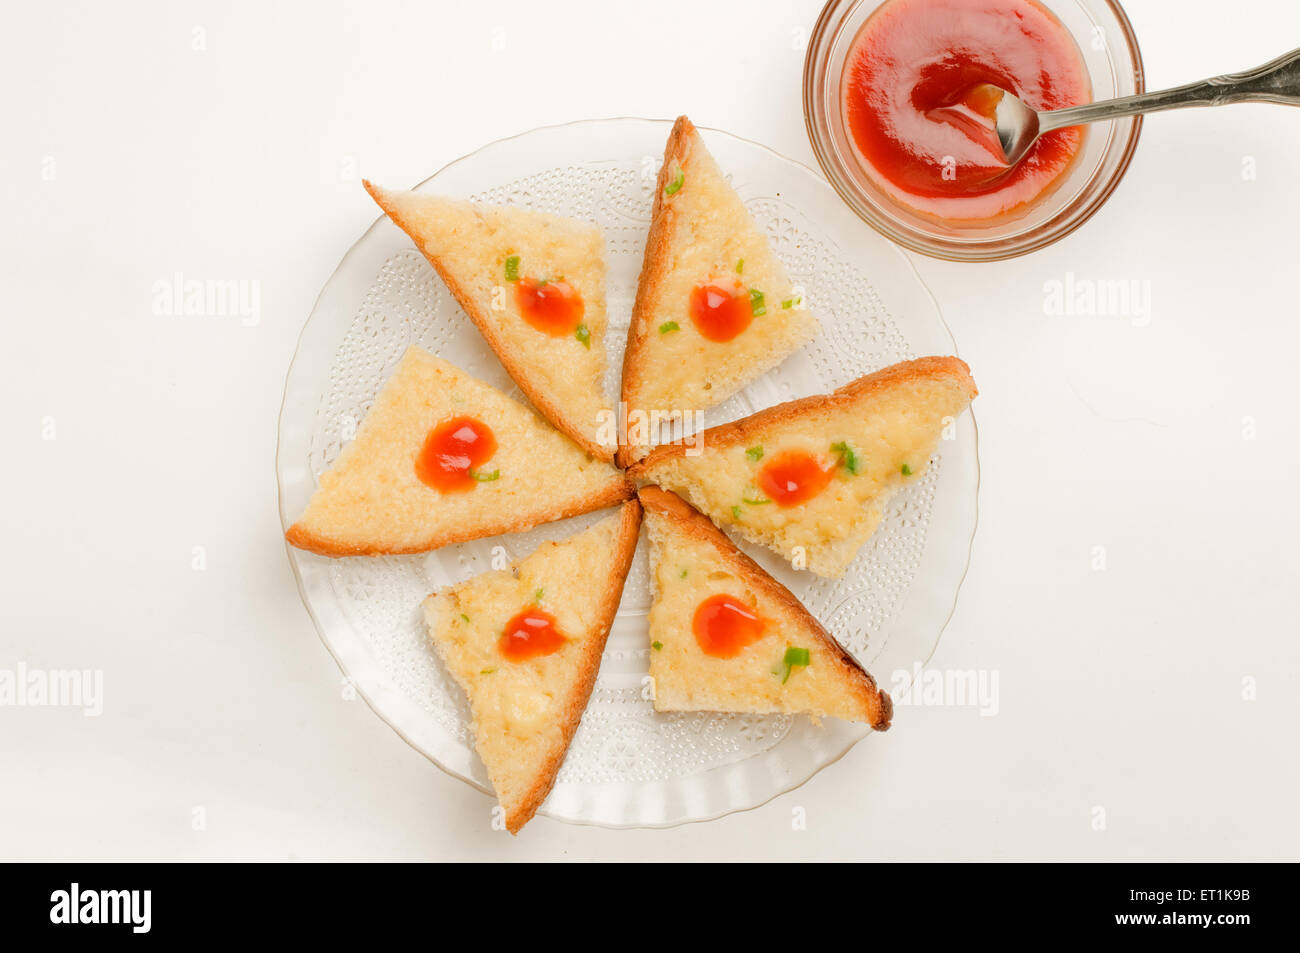 Chili-Käse-Toast mit Tomaten Ketchup Schüssel Pune Maharashtra Indien Asien Sept 2011 Stockfoto